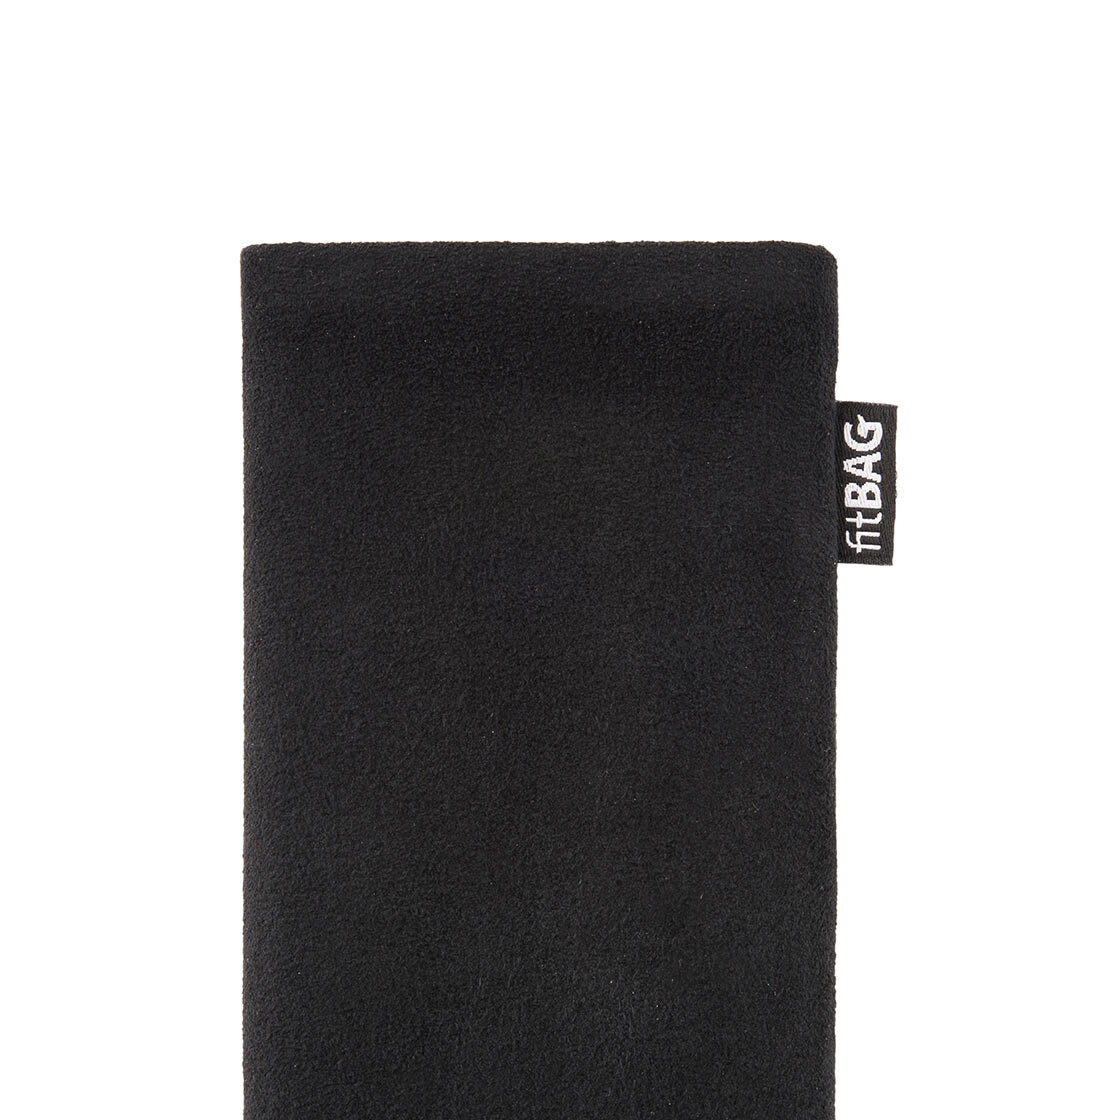 Hülle mit Reinigungsfunktion fitBAG Classic Schwarz Handytasche Tasche aus original Alcantara mit Microfaserinnenfutter für Apple iPhone 11 Made in Germany 